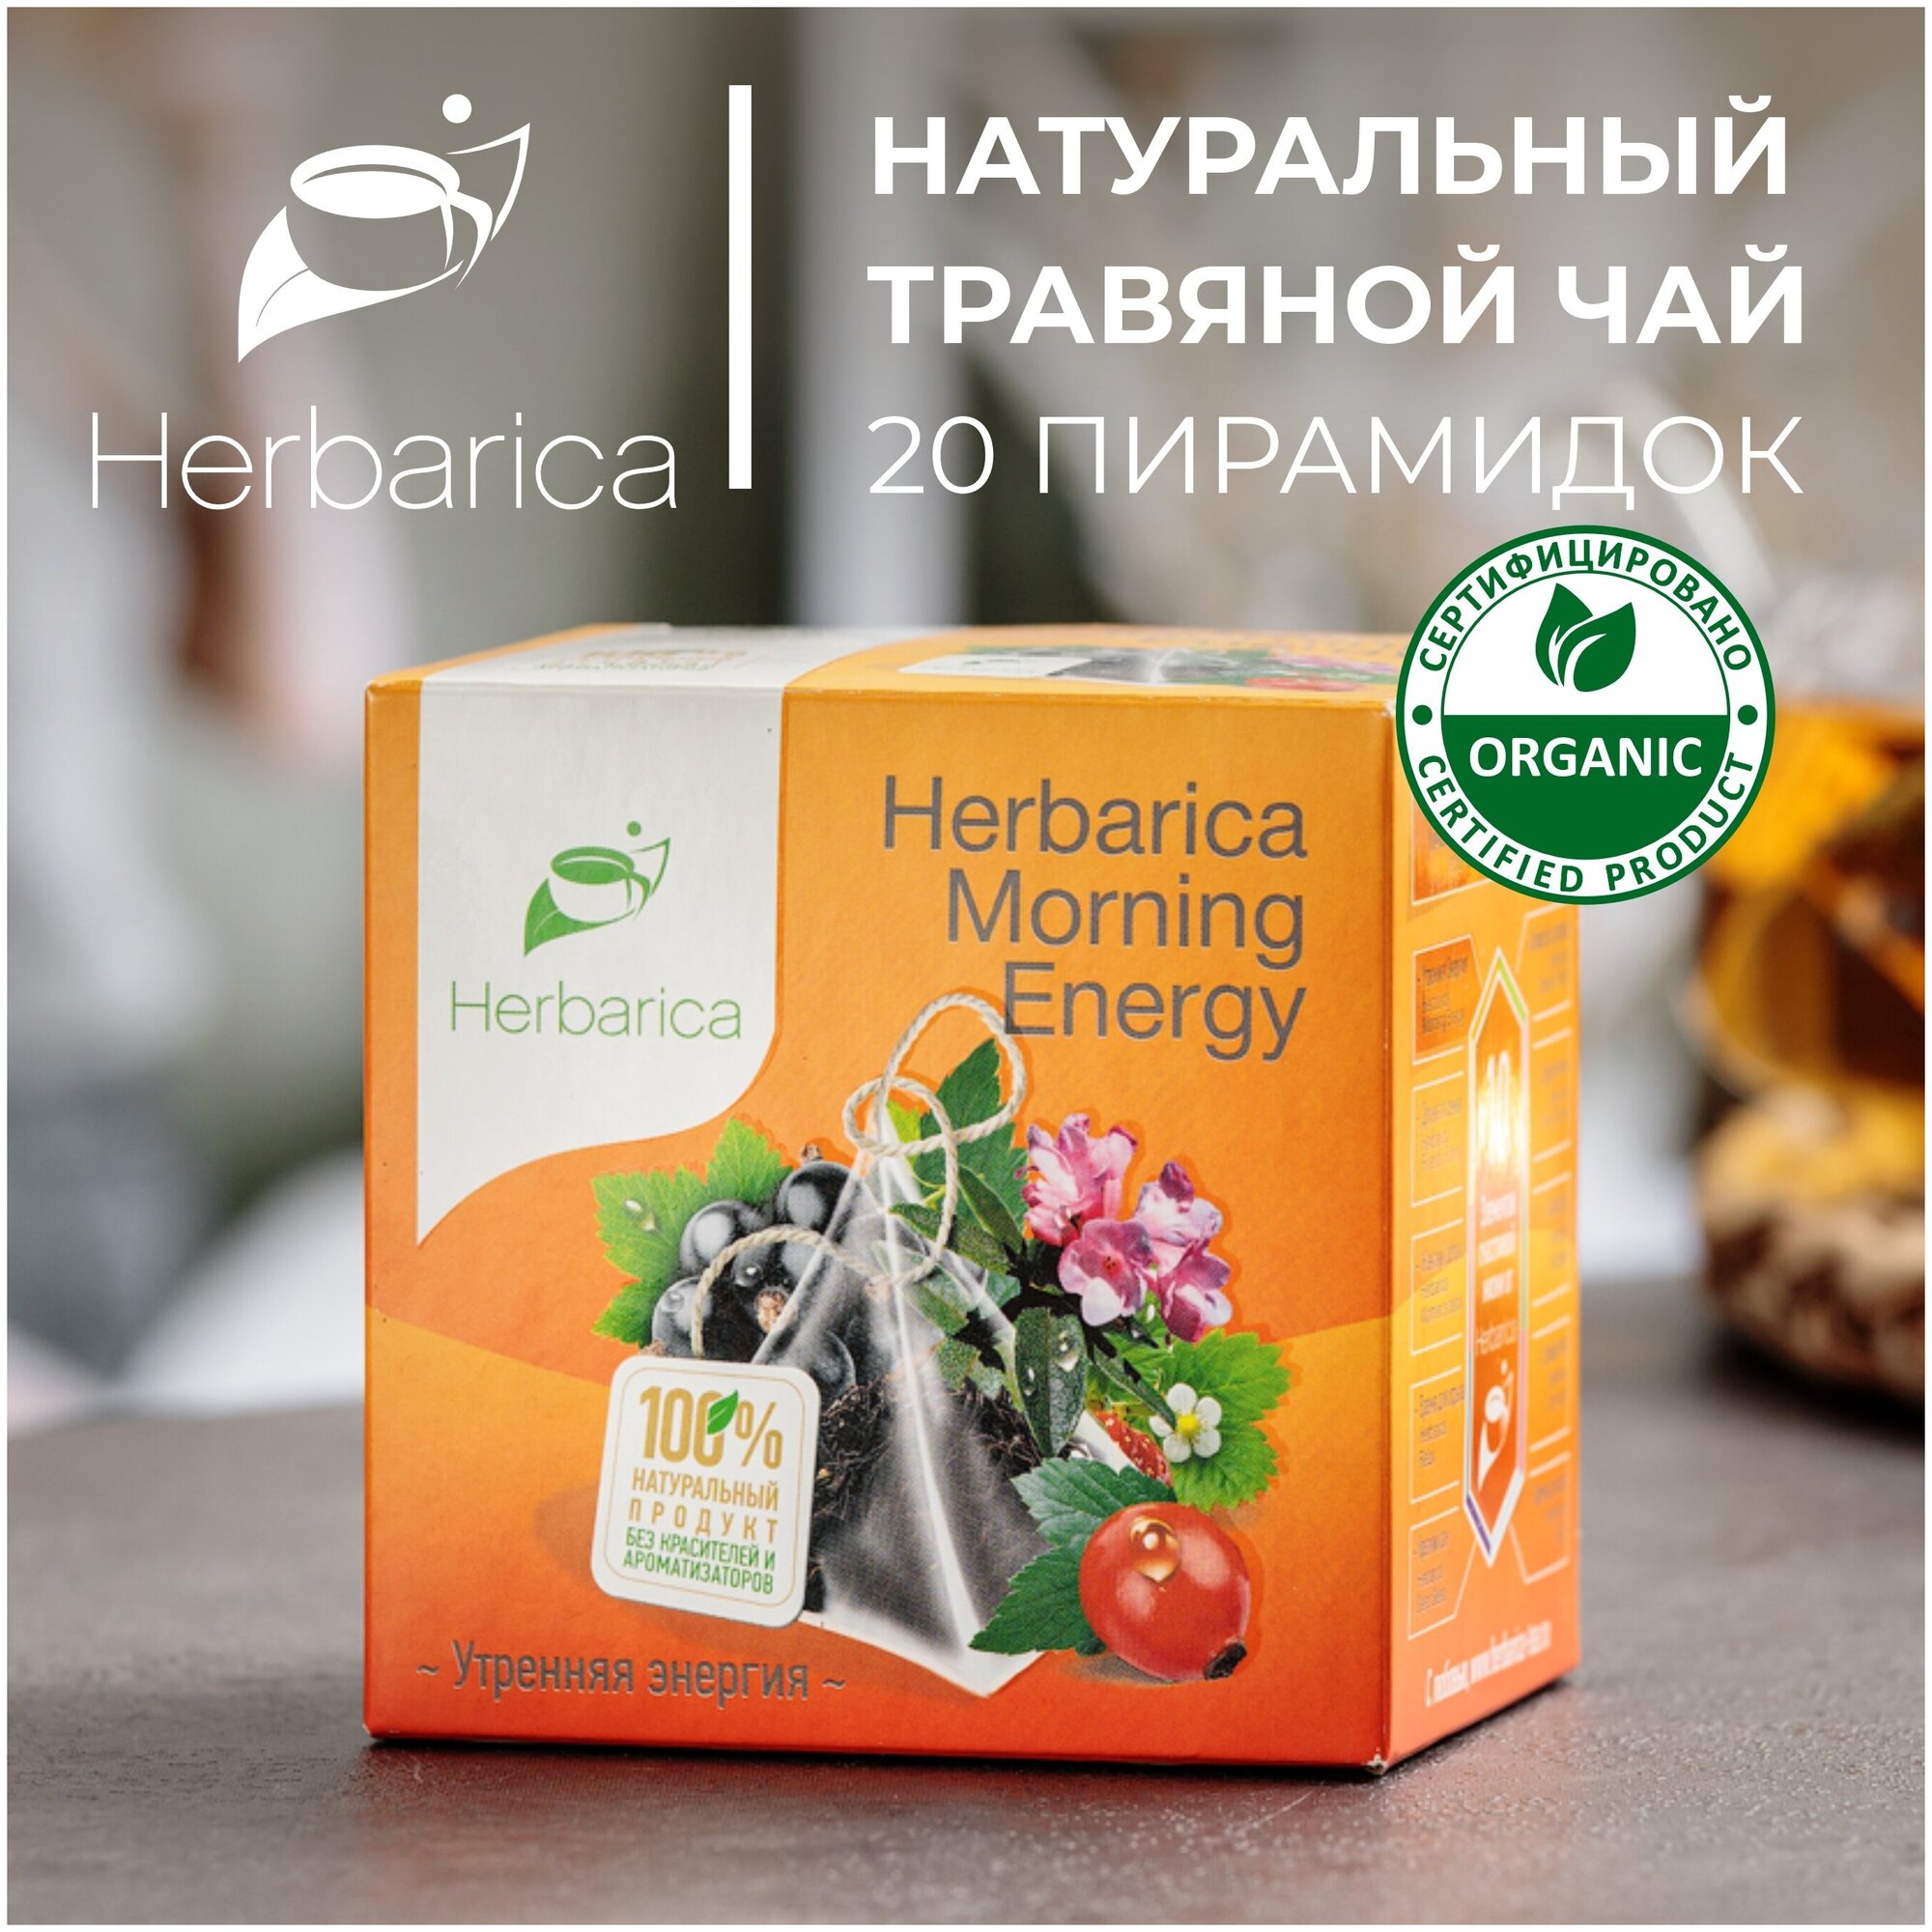 Herbarica Morning Energy Гербарика Утренняя энергия травяной чай 20 пир. листья смородины земляники лемонграсс шиповник саган-дайля смородина